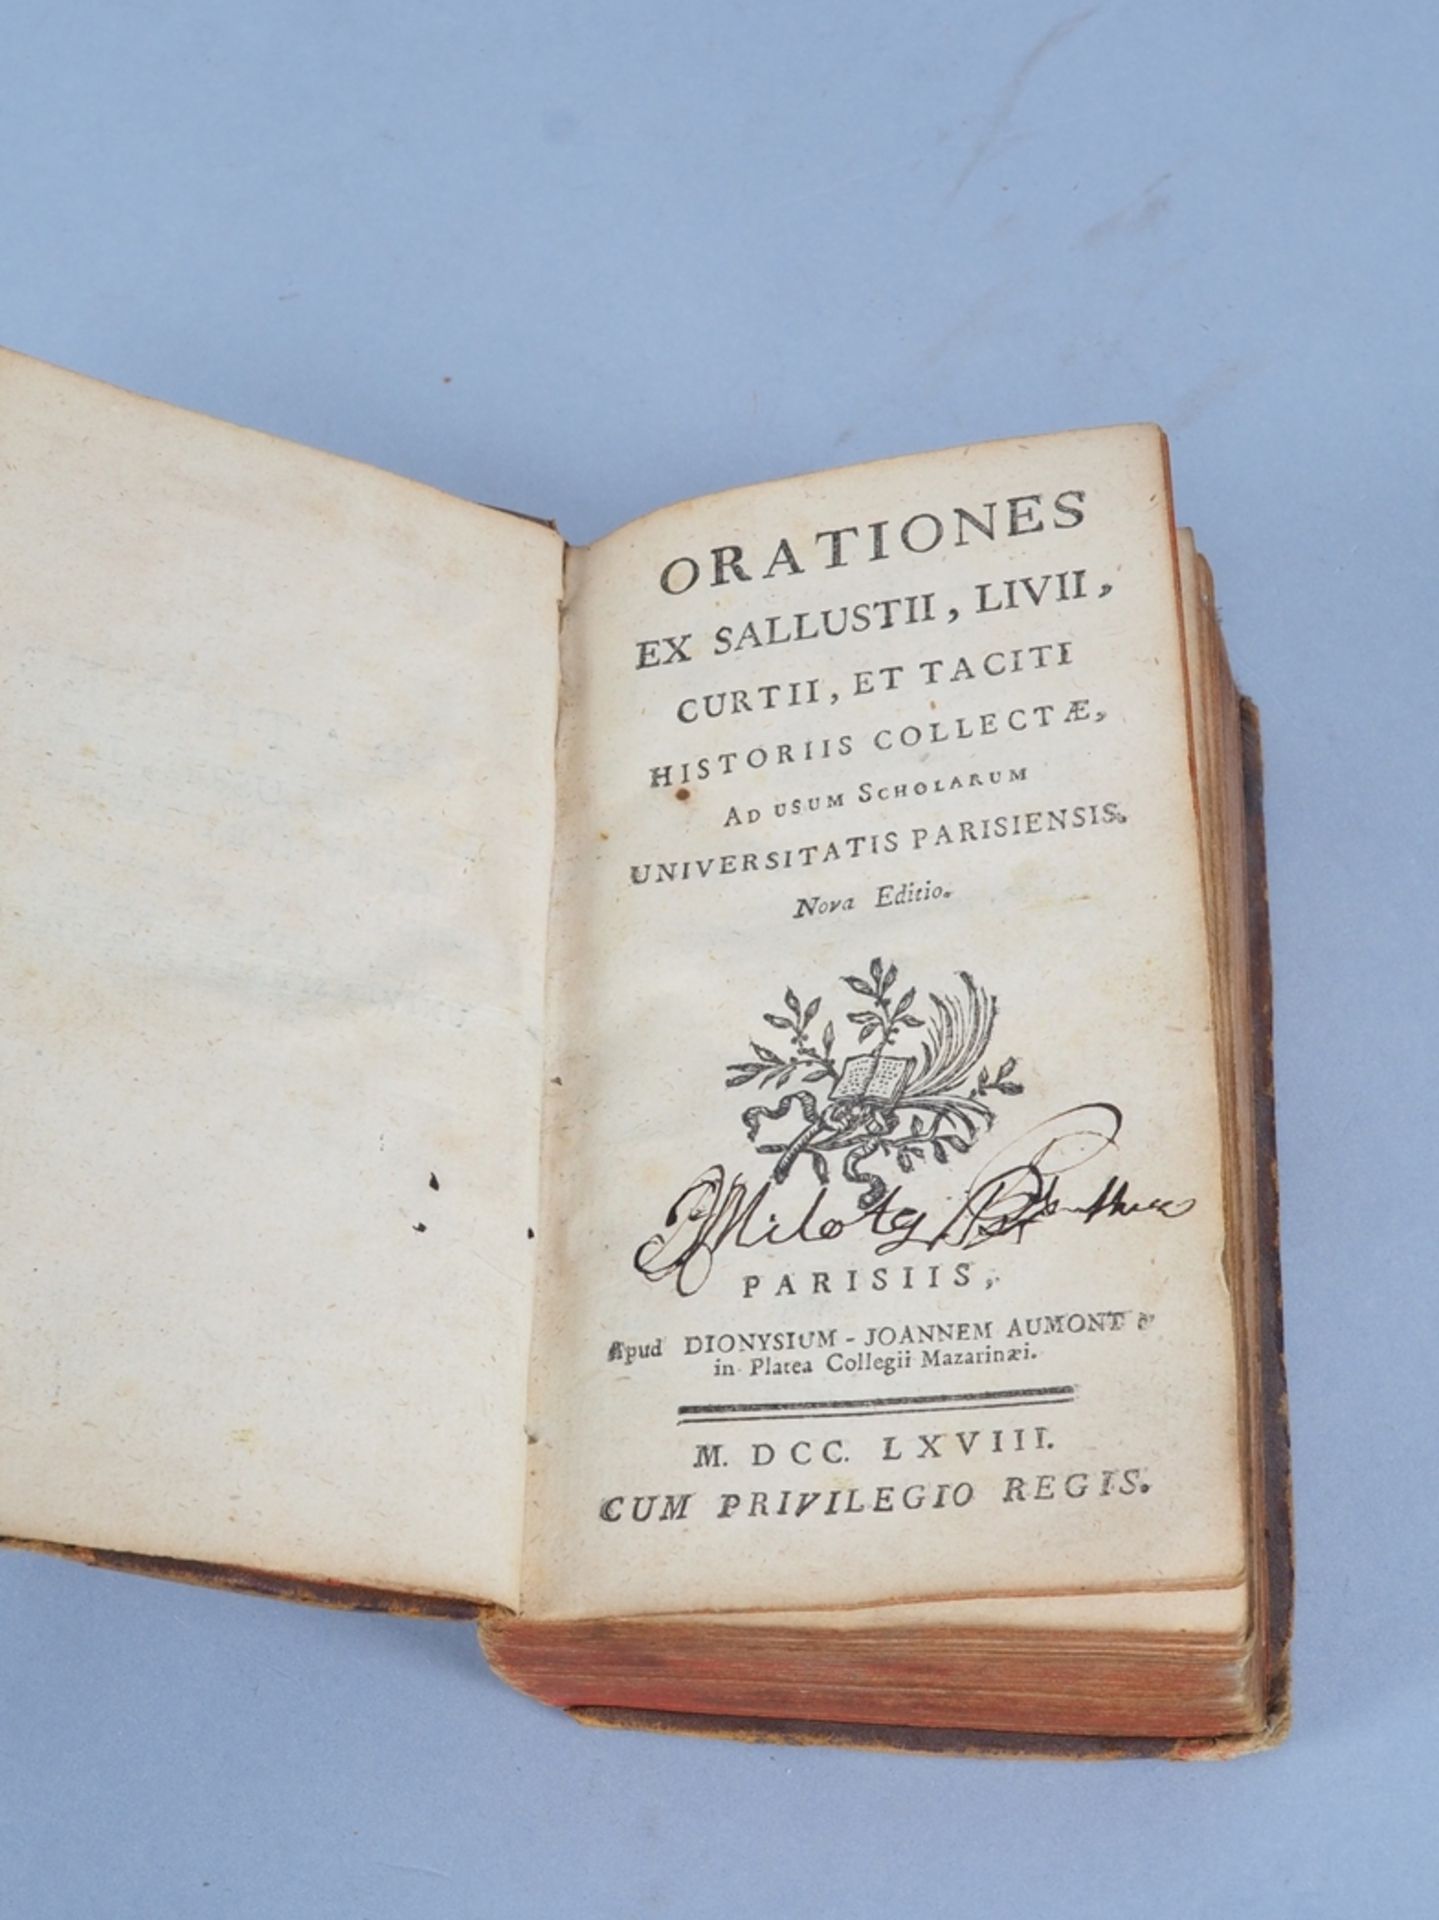 Orationes ex Sallustii, Livii; Curtii, et Taciti, 1768 - Bild 3 aus 4